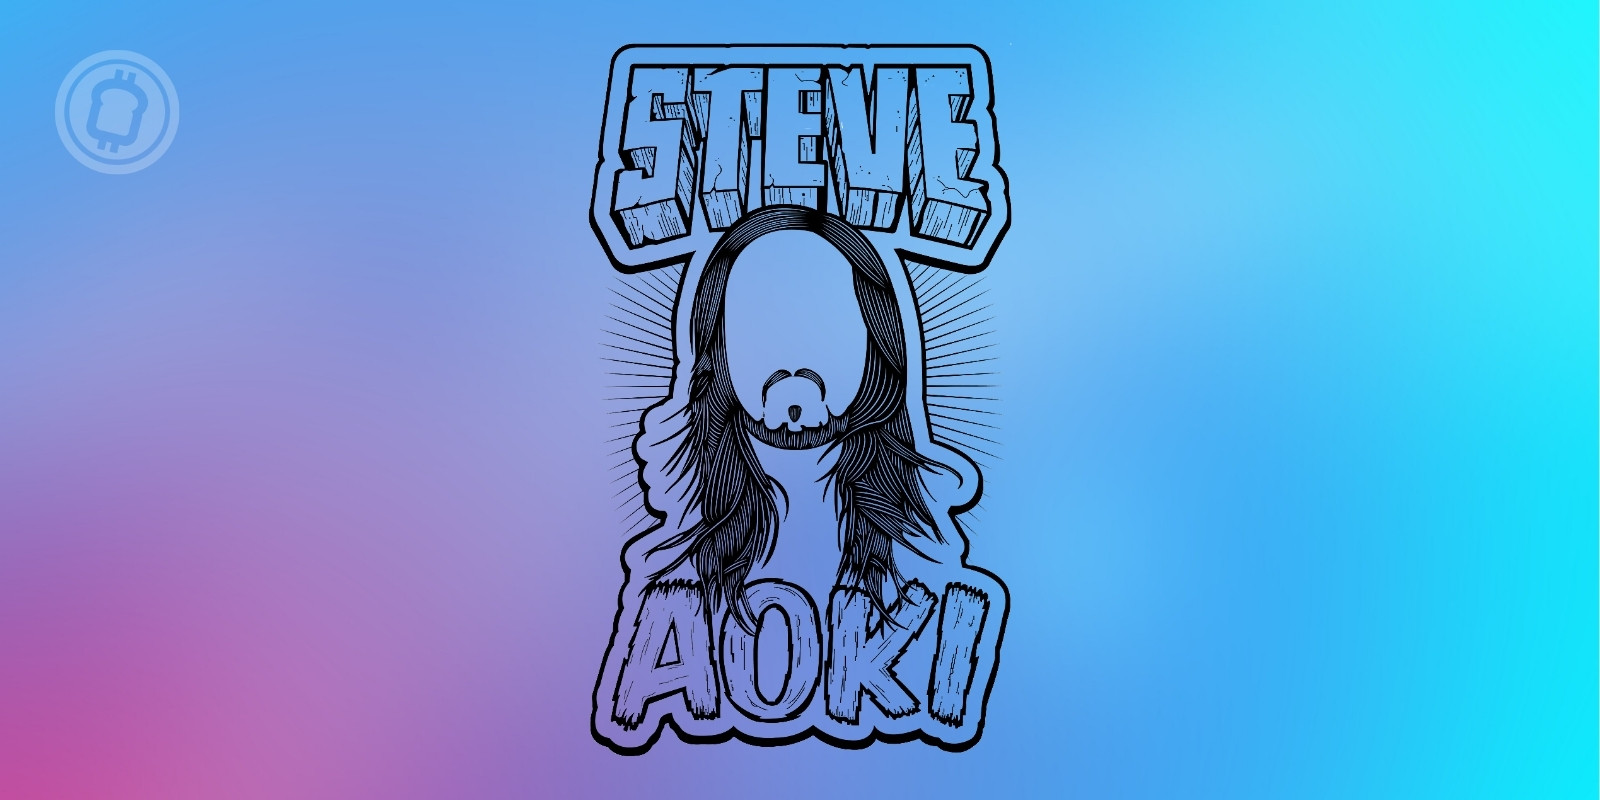 Le DJ Steve Aoki annonce un pass exclusif sous forme de NFT pour ses fans